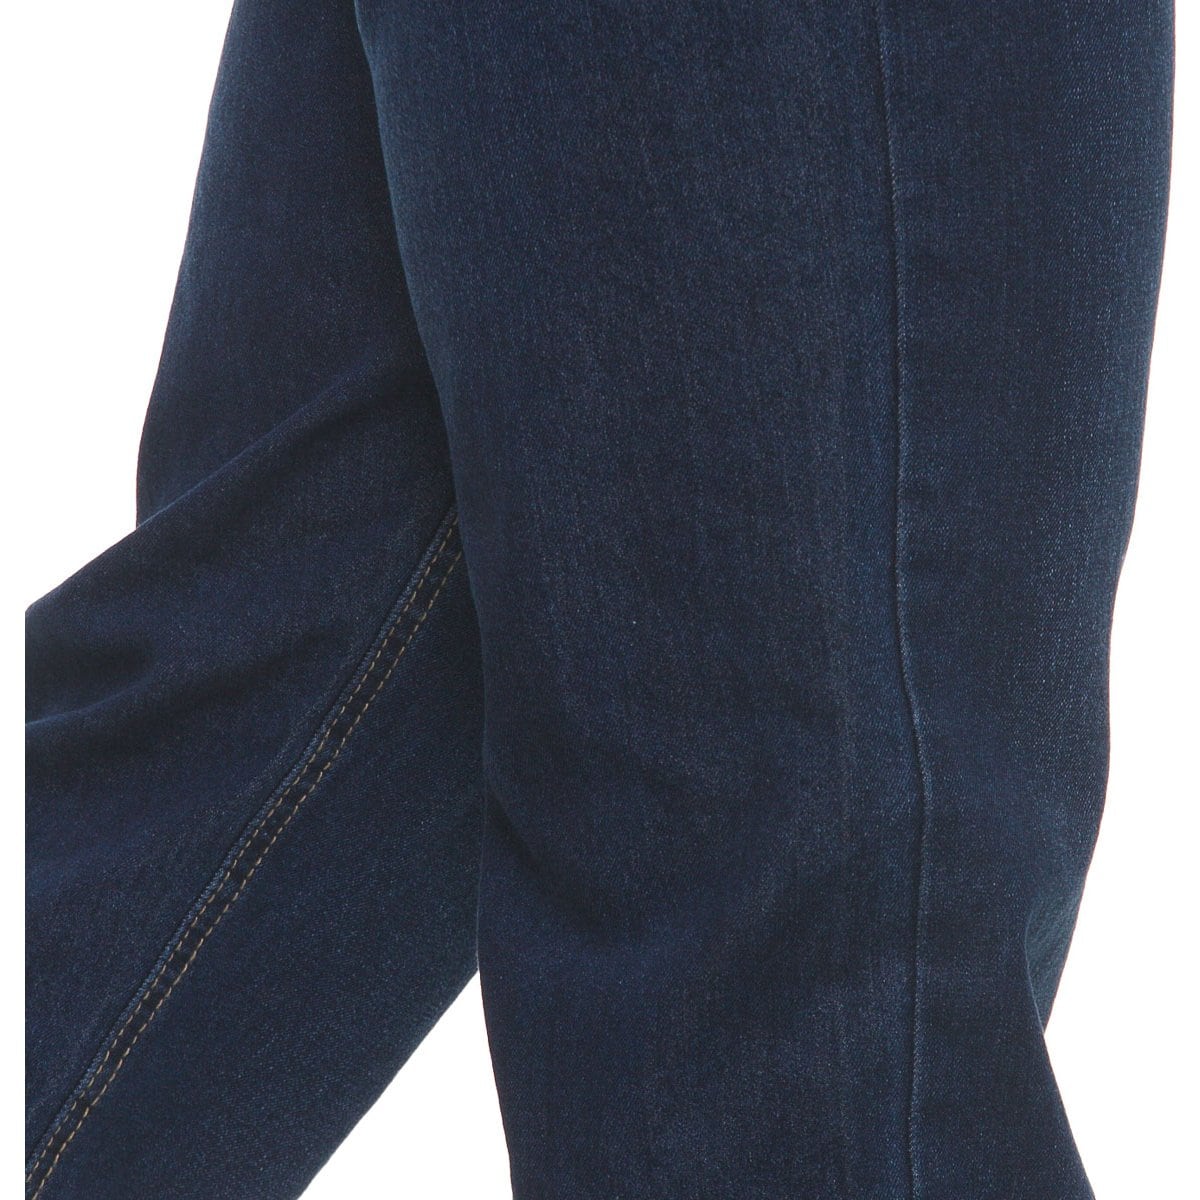 Jeans Talle Bajo Desg. para Hombre Royal Polo Club